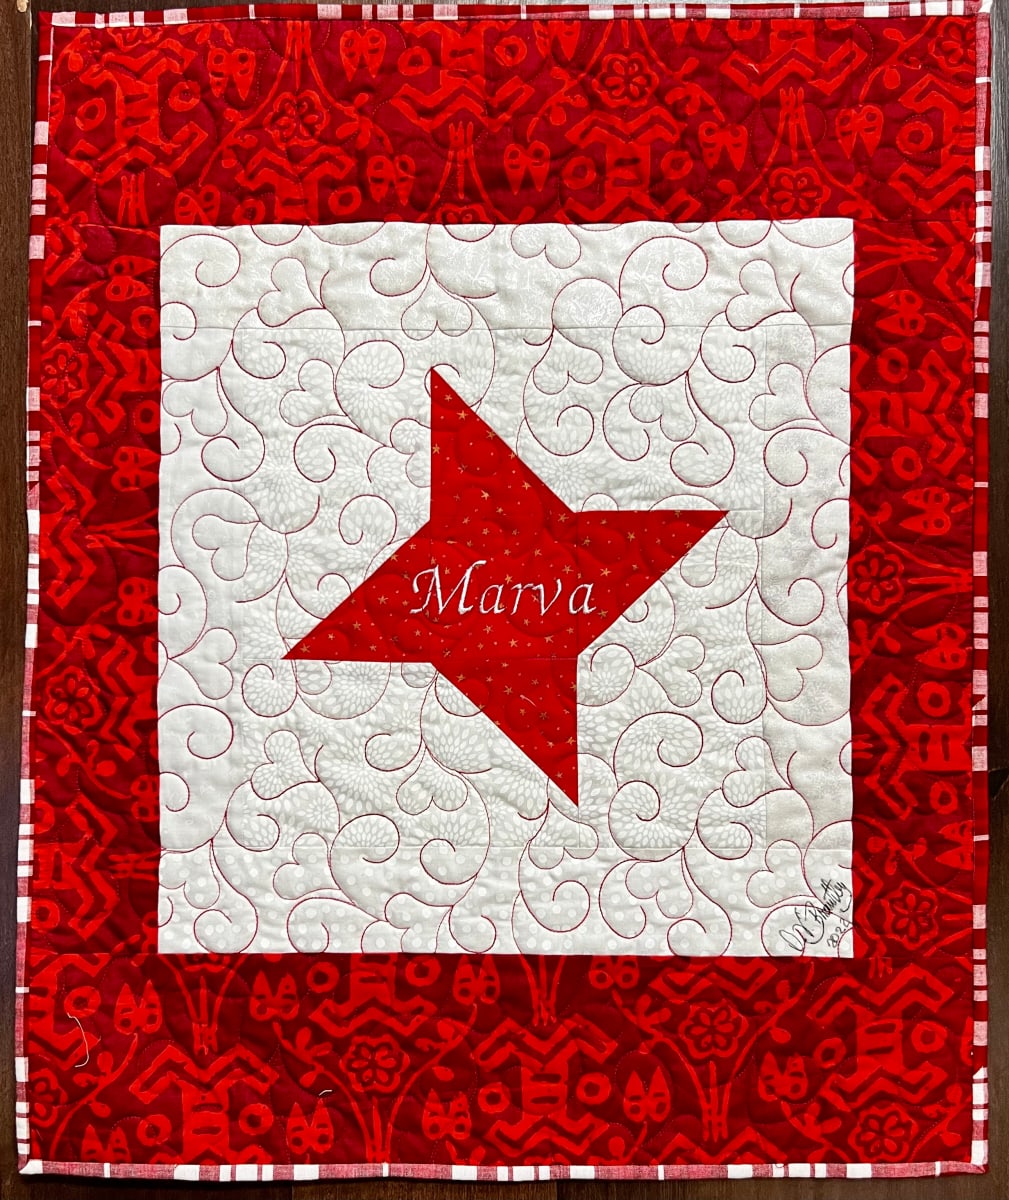 Marva’s Friendship Star by O.V. Brantley  Image: Peggy’s Friendship Star